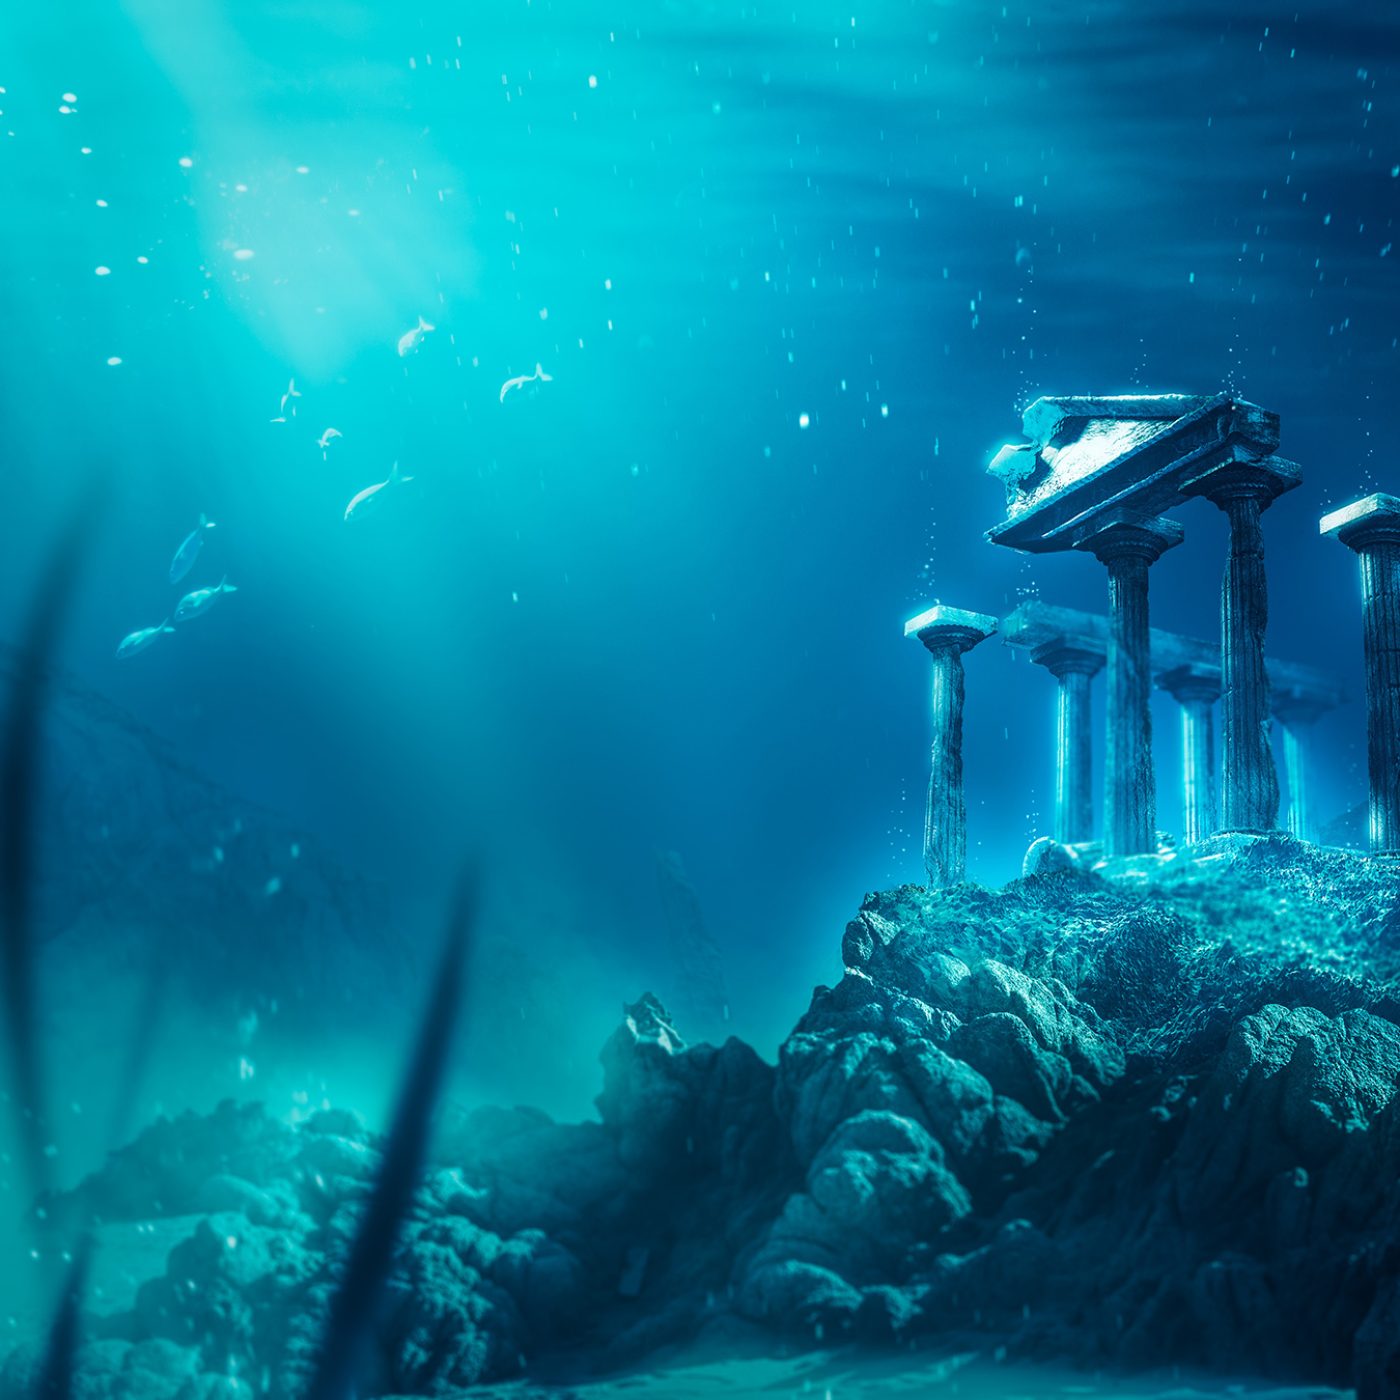 Ocean Spiral: The Underwater City